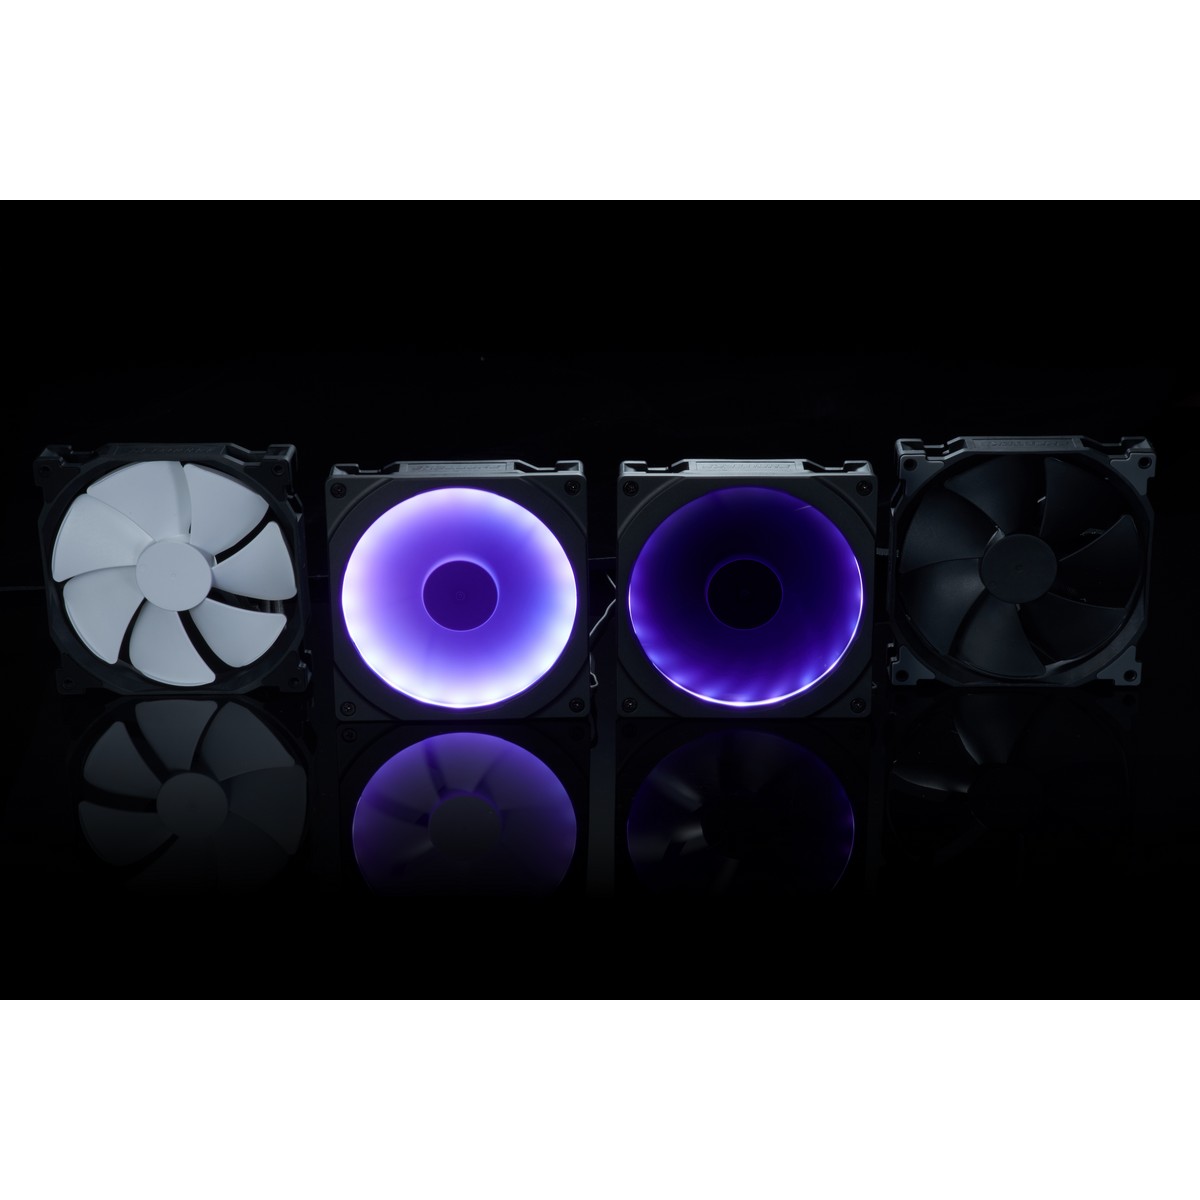 Phanteks - Phanteks Halos 140mm RGB LED Fan Frame - Black